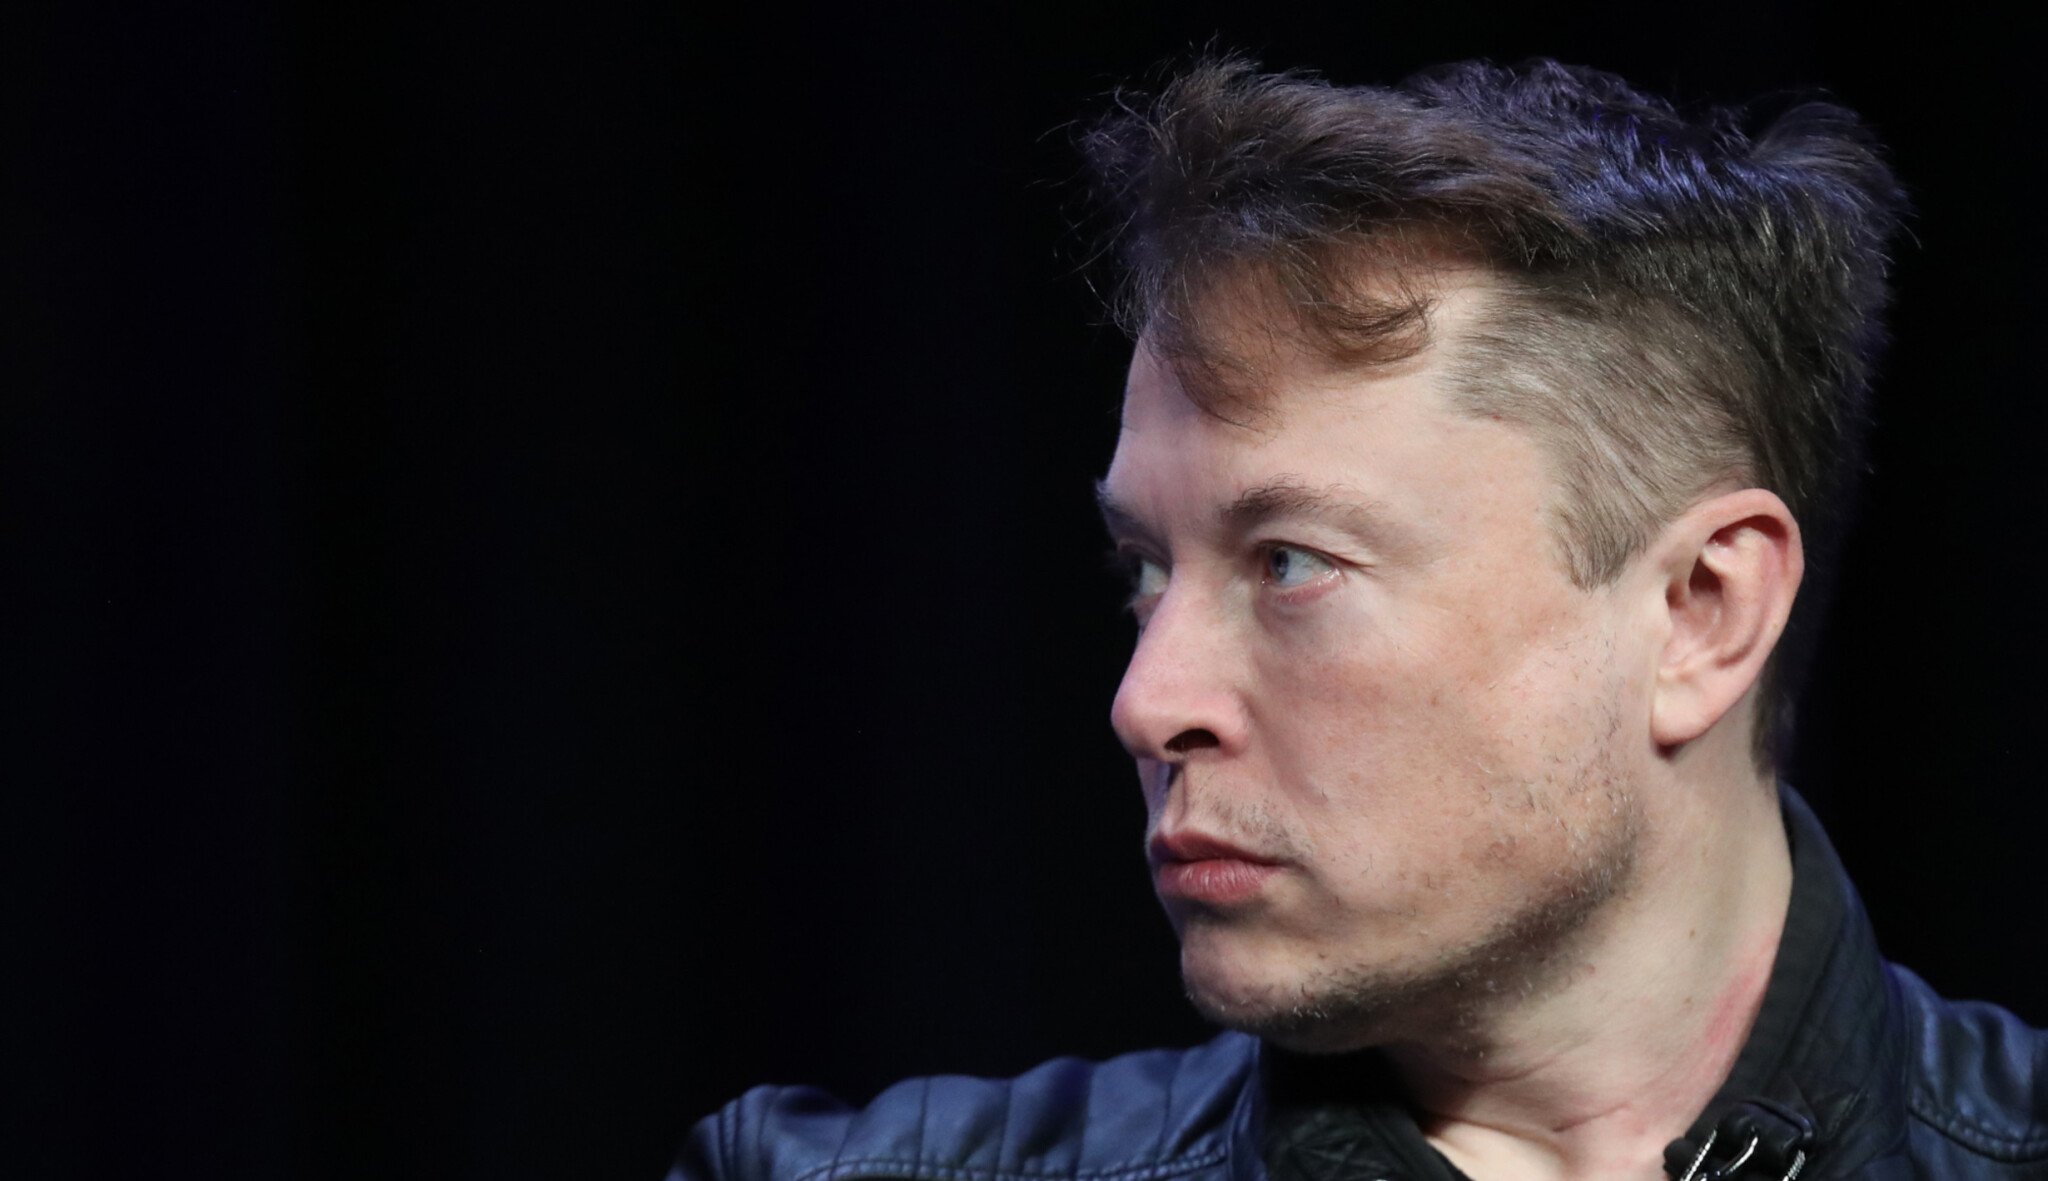 Spor technologických gigantů. Musk žaluje OpenAI a Altmana kvůli neziskové misi